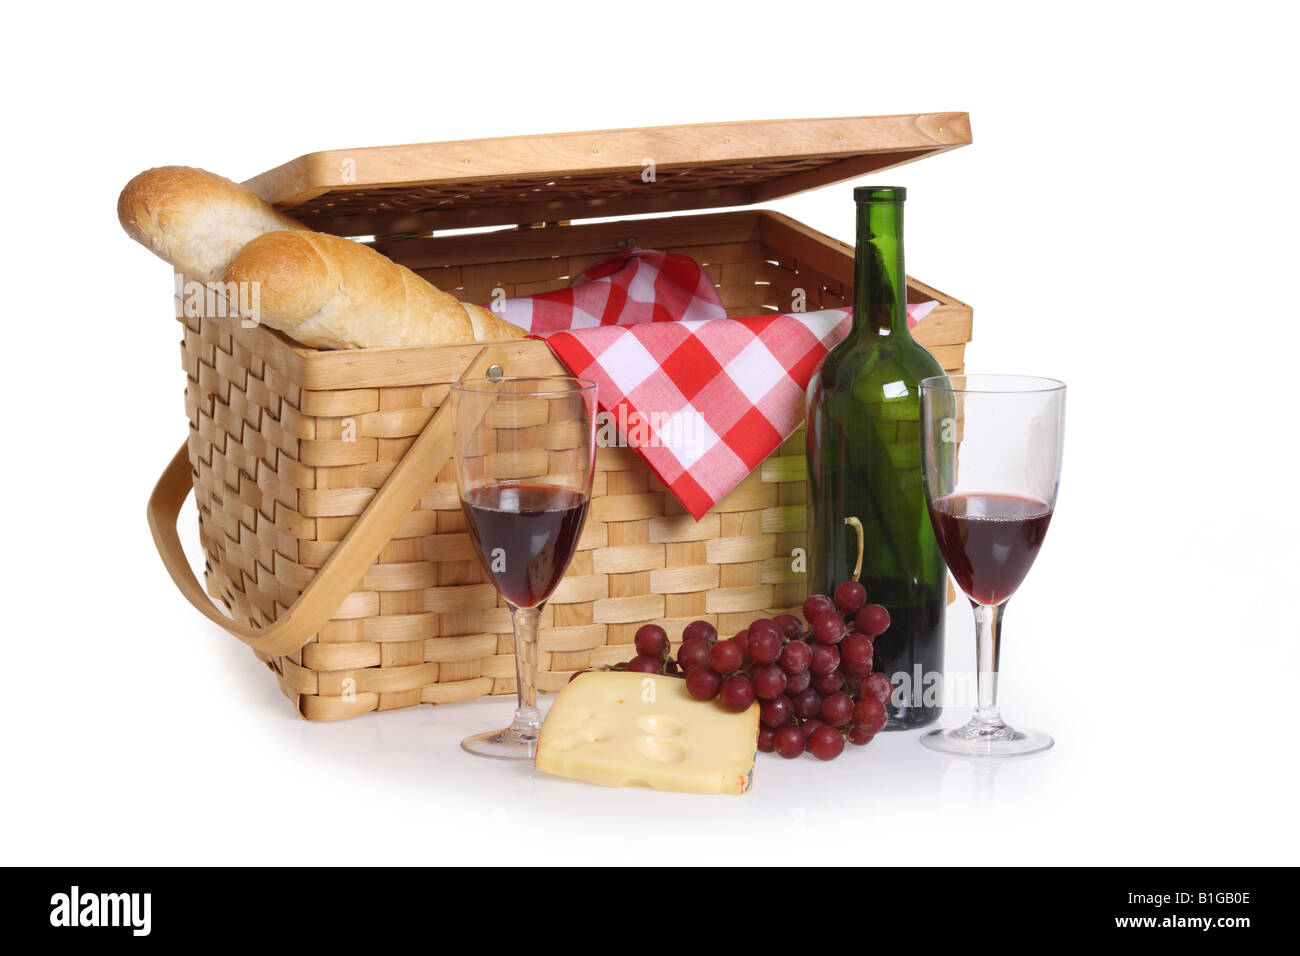 Panier pique-nique avec vin et fromage pain dentelle sur fond blanc Banque D'Images